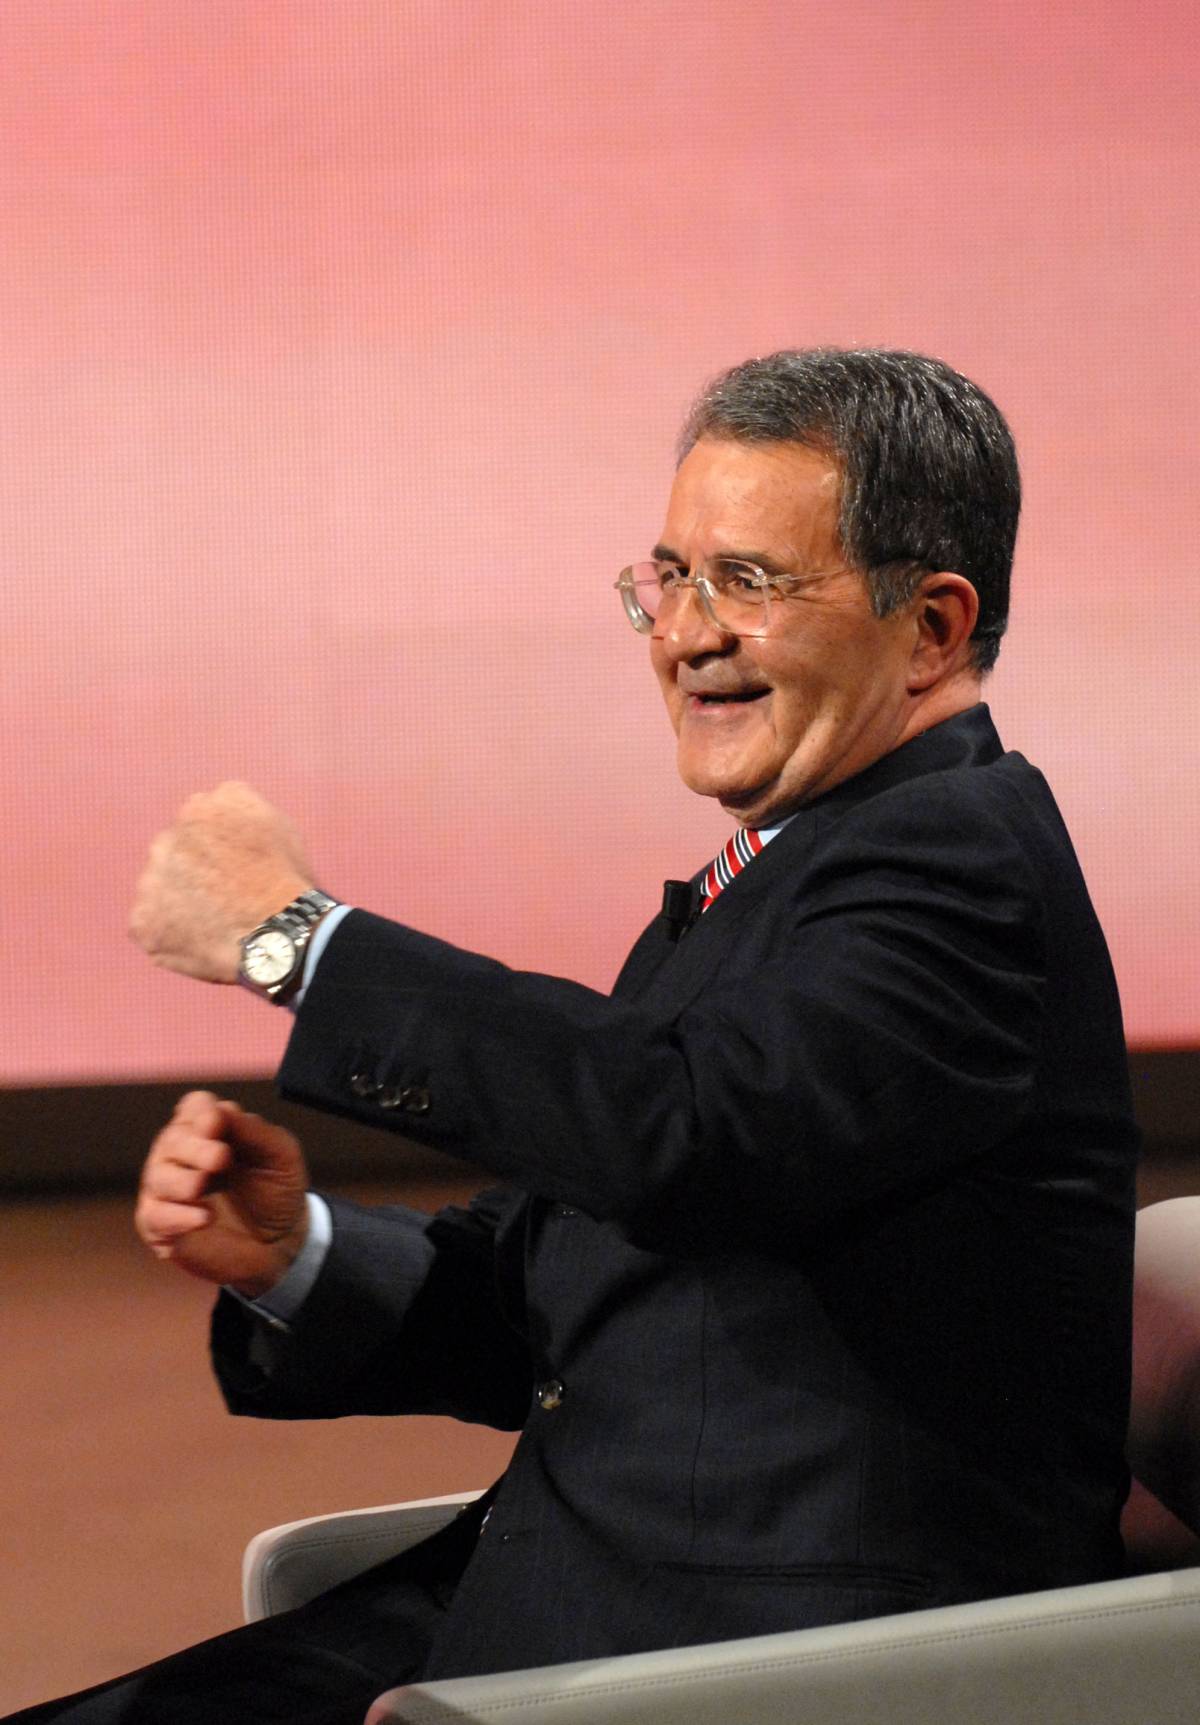 Prodi affonda il Partito democratico 
per riesumare il vecchio Ulivo